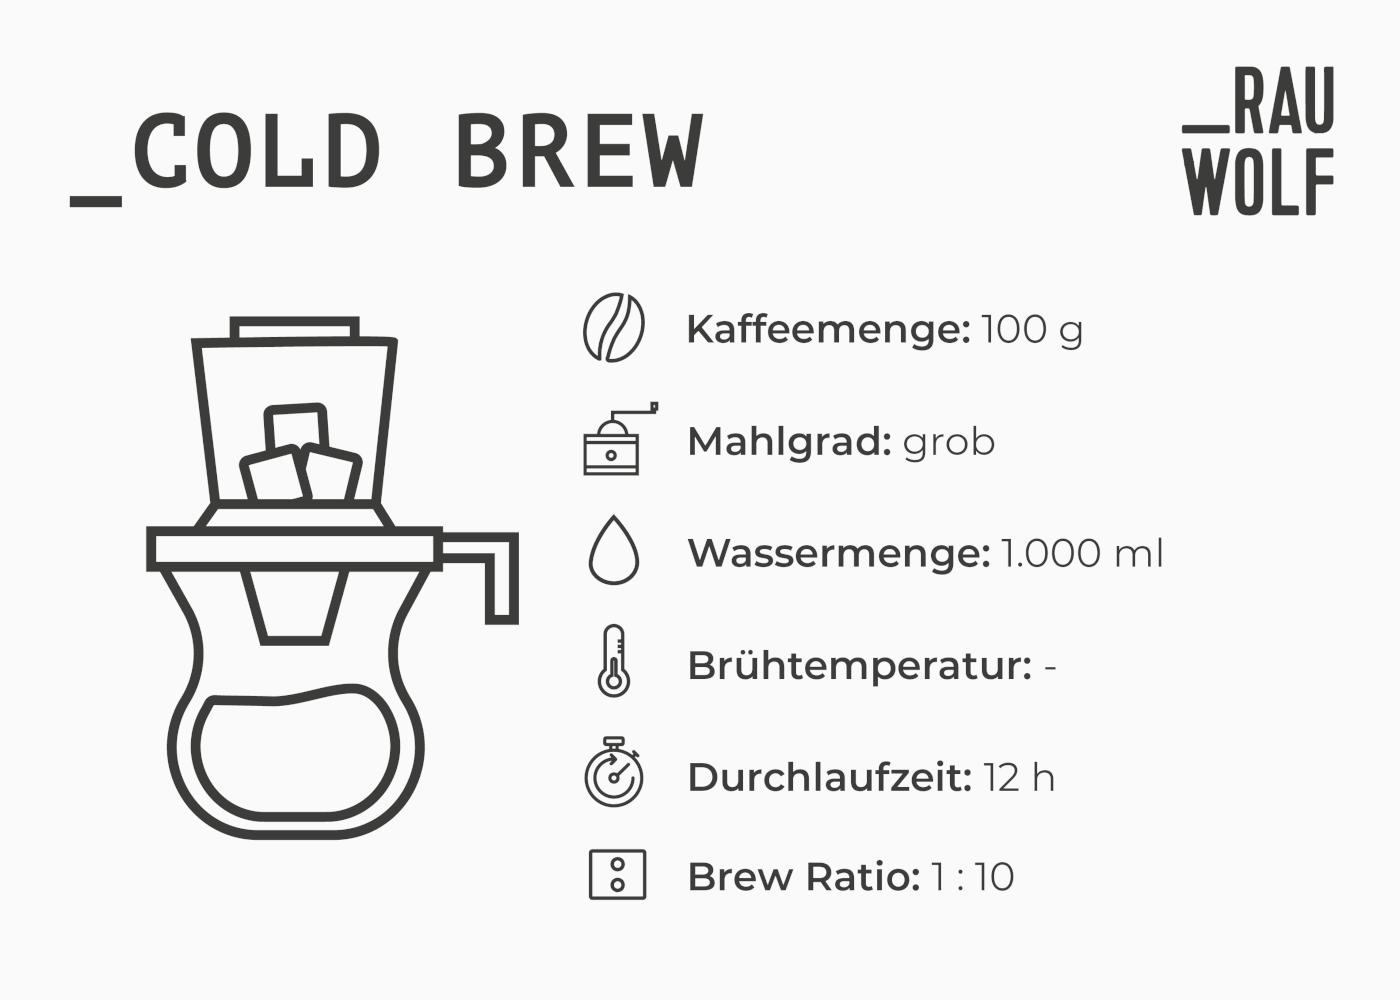 Zubereitung Cold Brew: Kaffee-Mahlgrad, Temperatur, Durchlaufzeit, Brew Ratio etc.